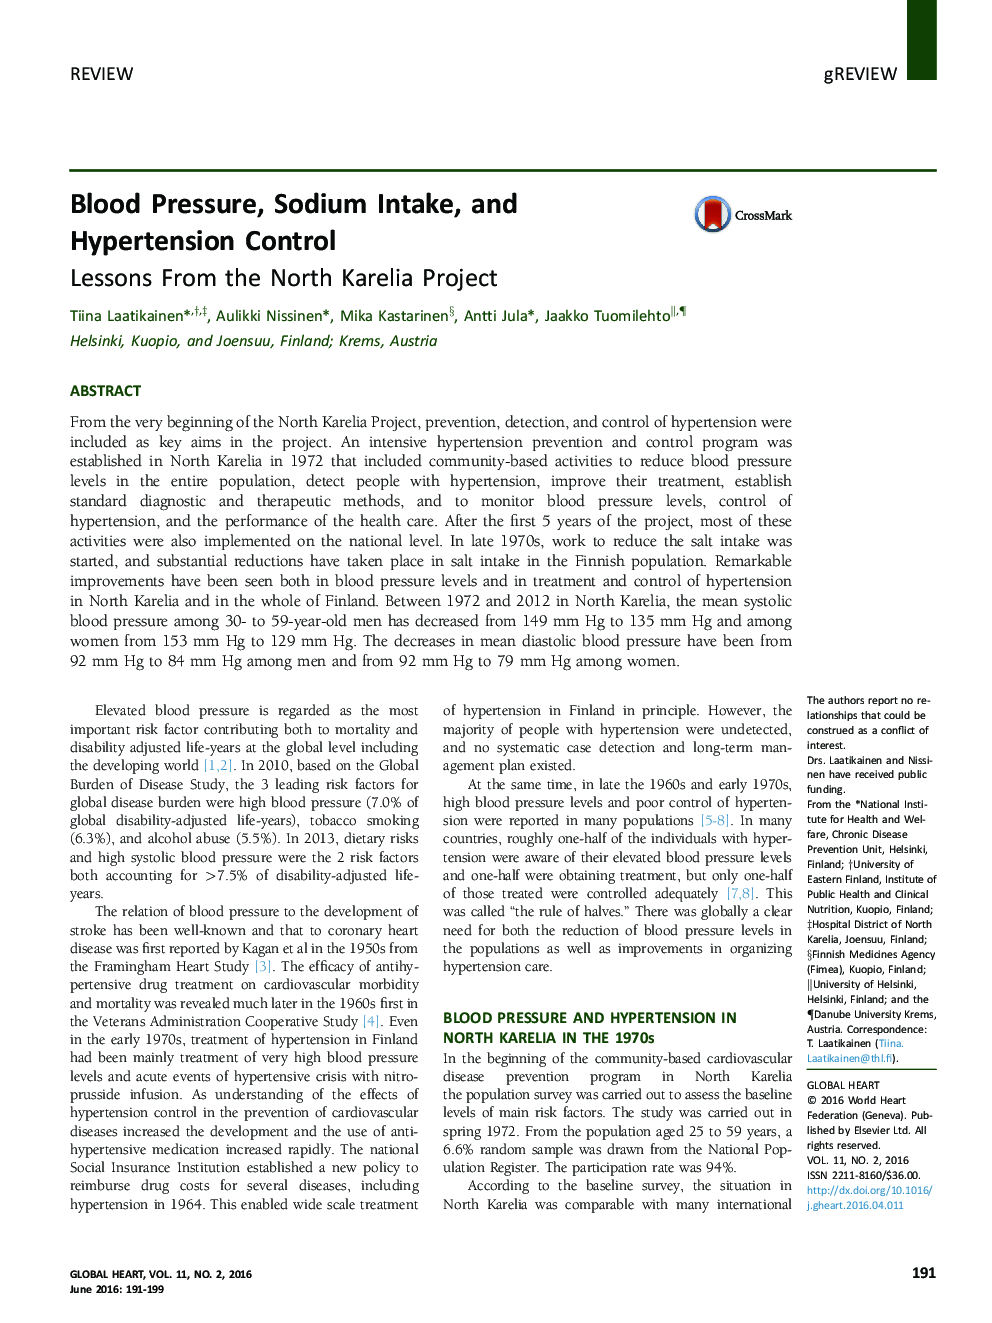 فشار خون، مصرف سدیم و کنترل فشار خون: درسهایی از پروژه کارلای شمالی 